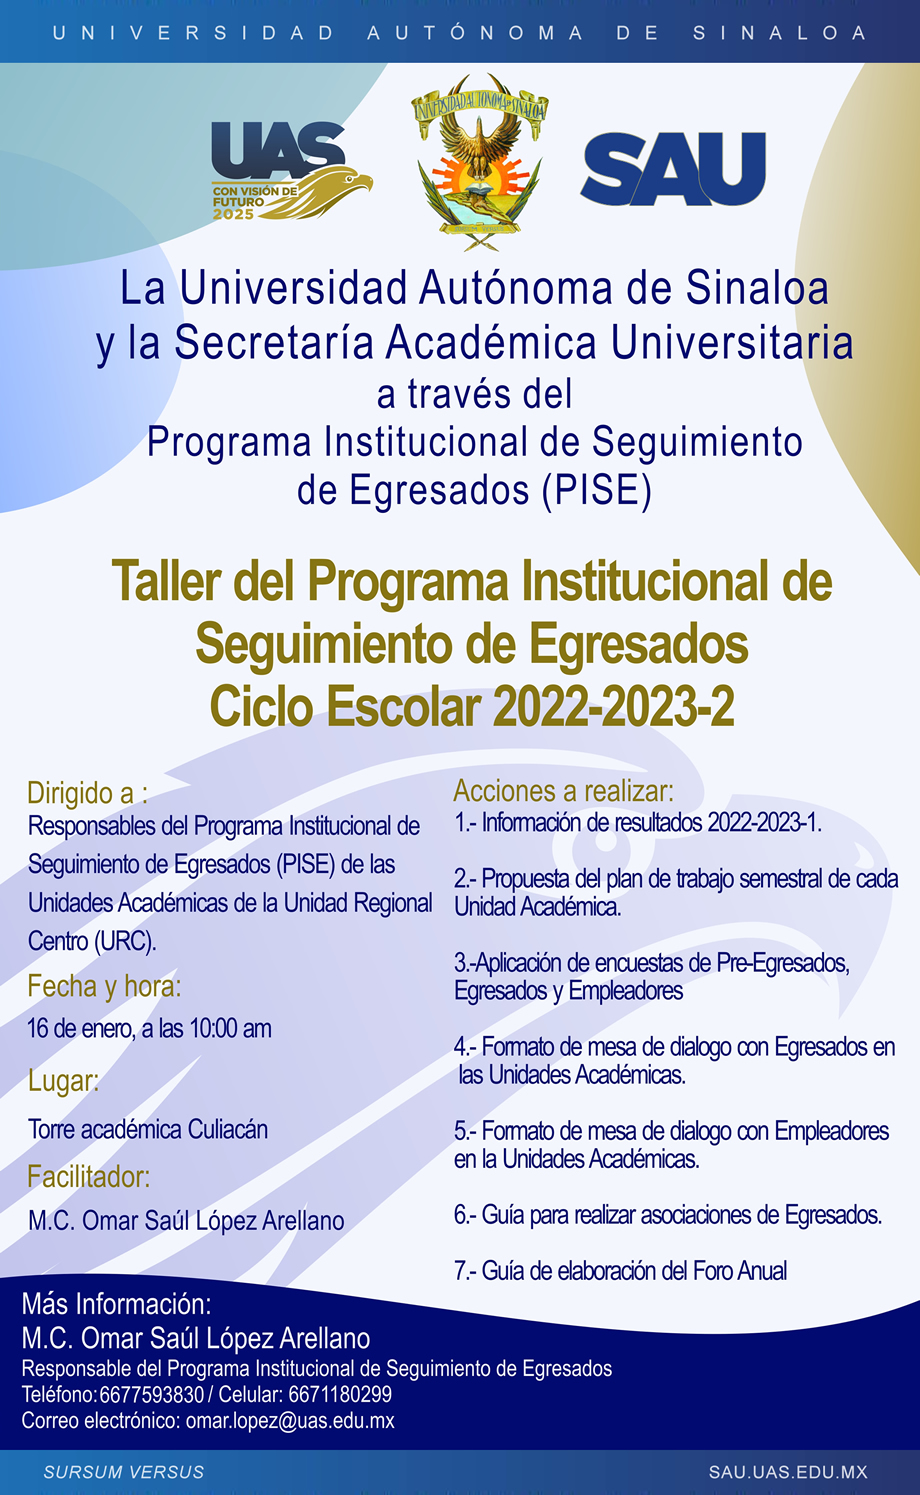 Taller del Programa Institucional de Seguimiento de Egresados, Unidad Regional Centro, Ciclo Escolar 2022-2023-2